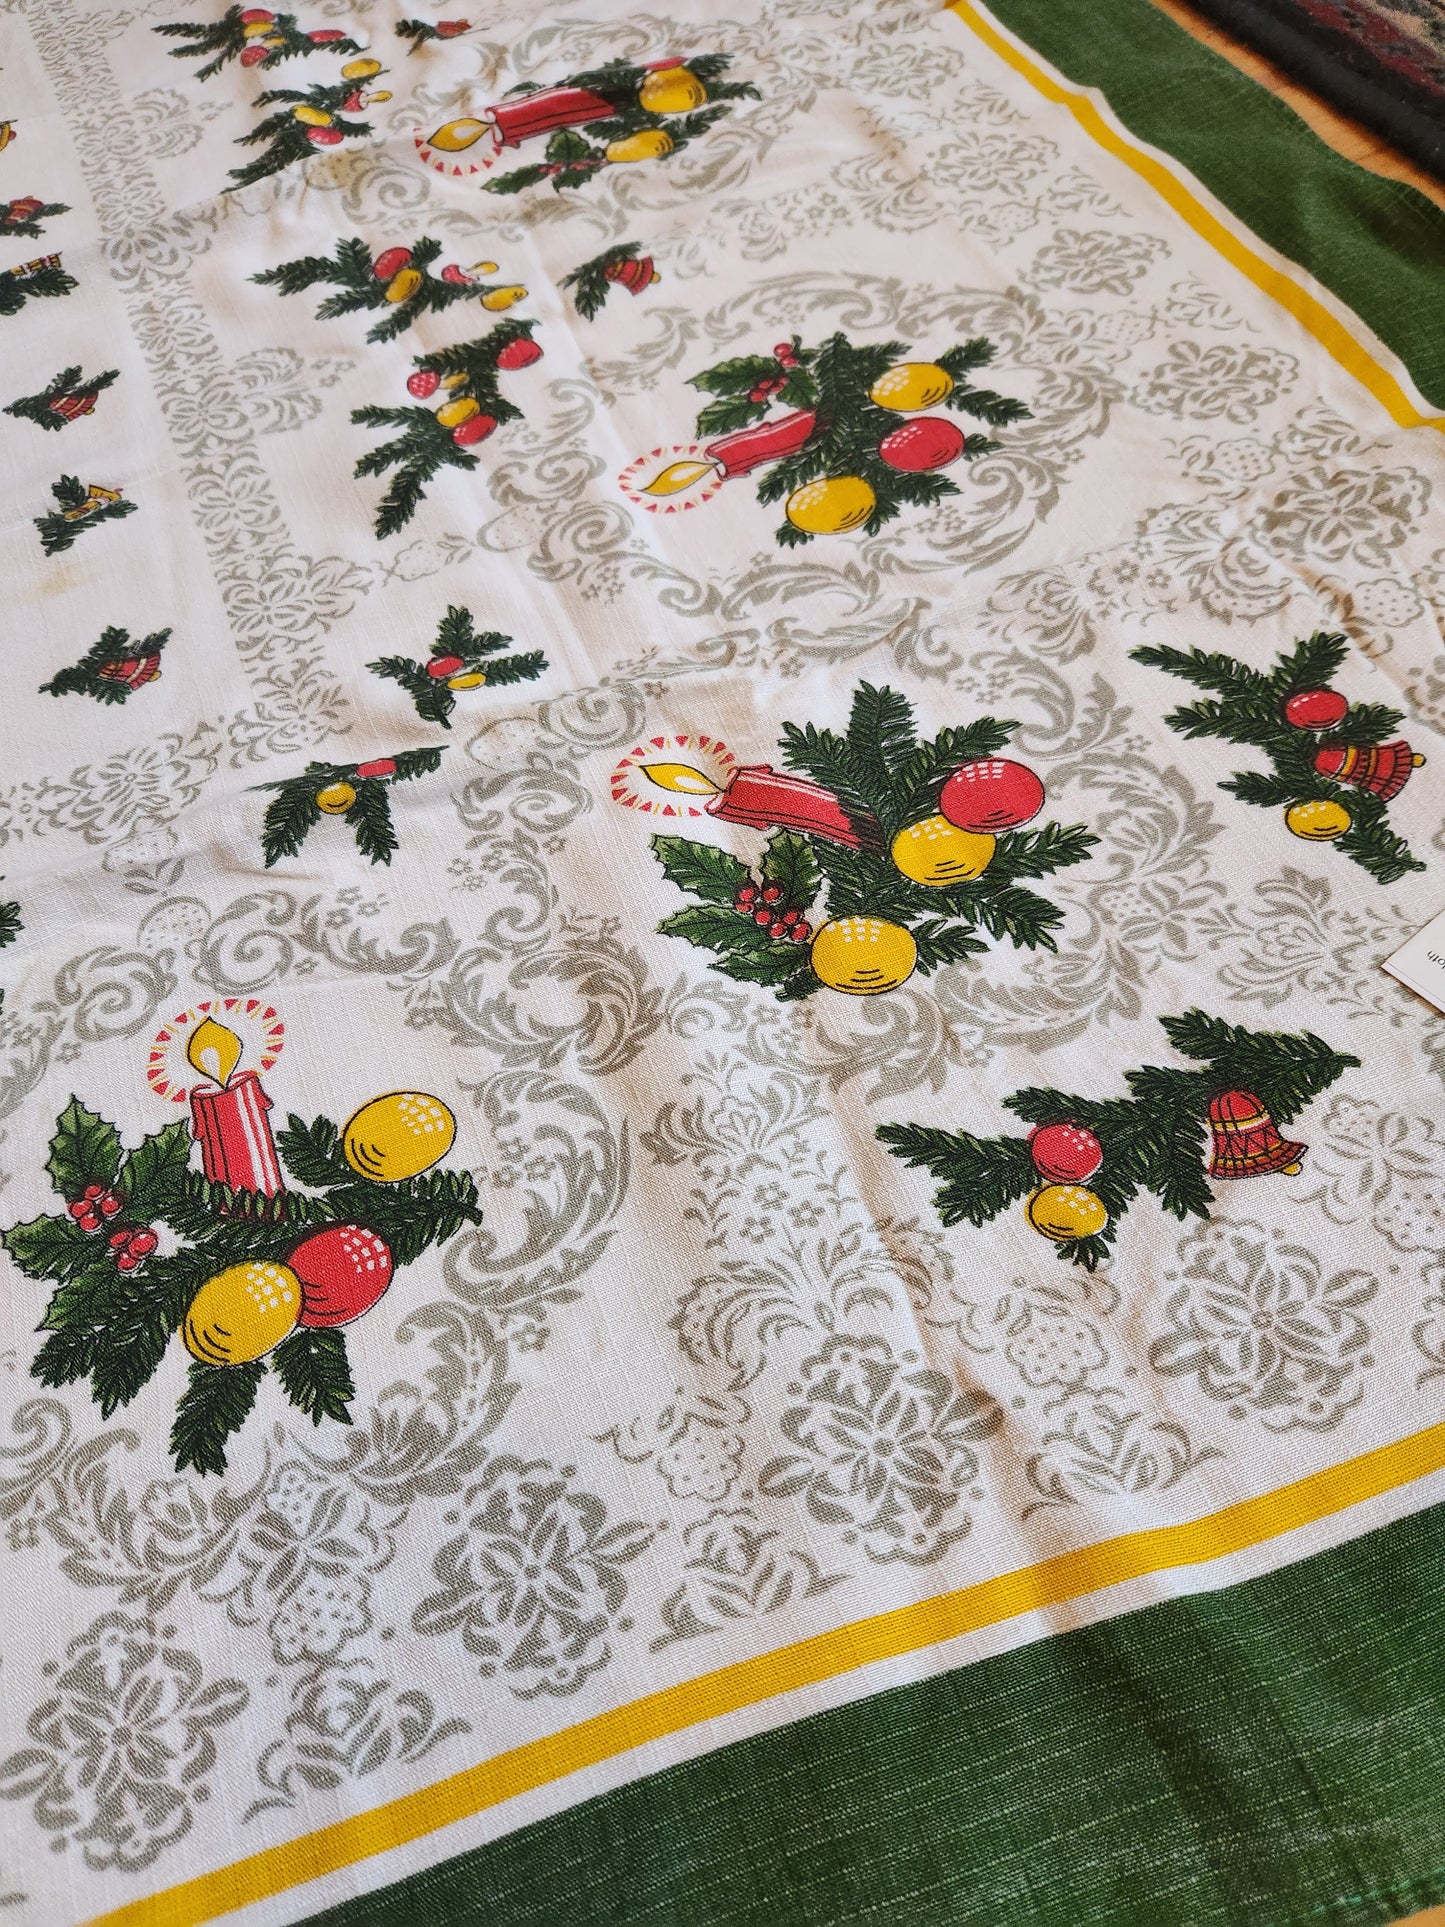 Vintage Christmas Table Cloth